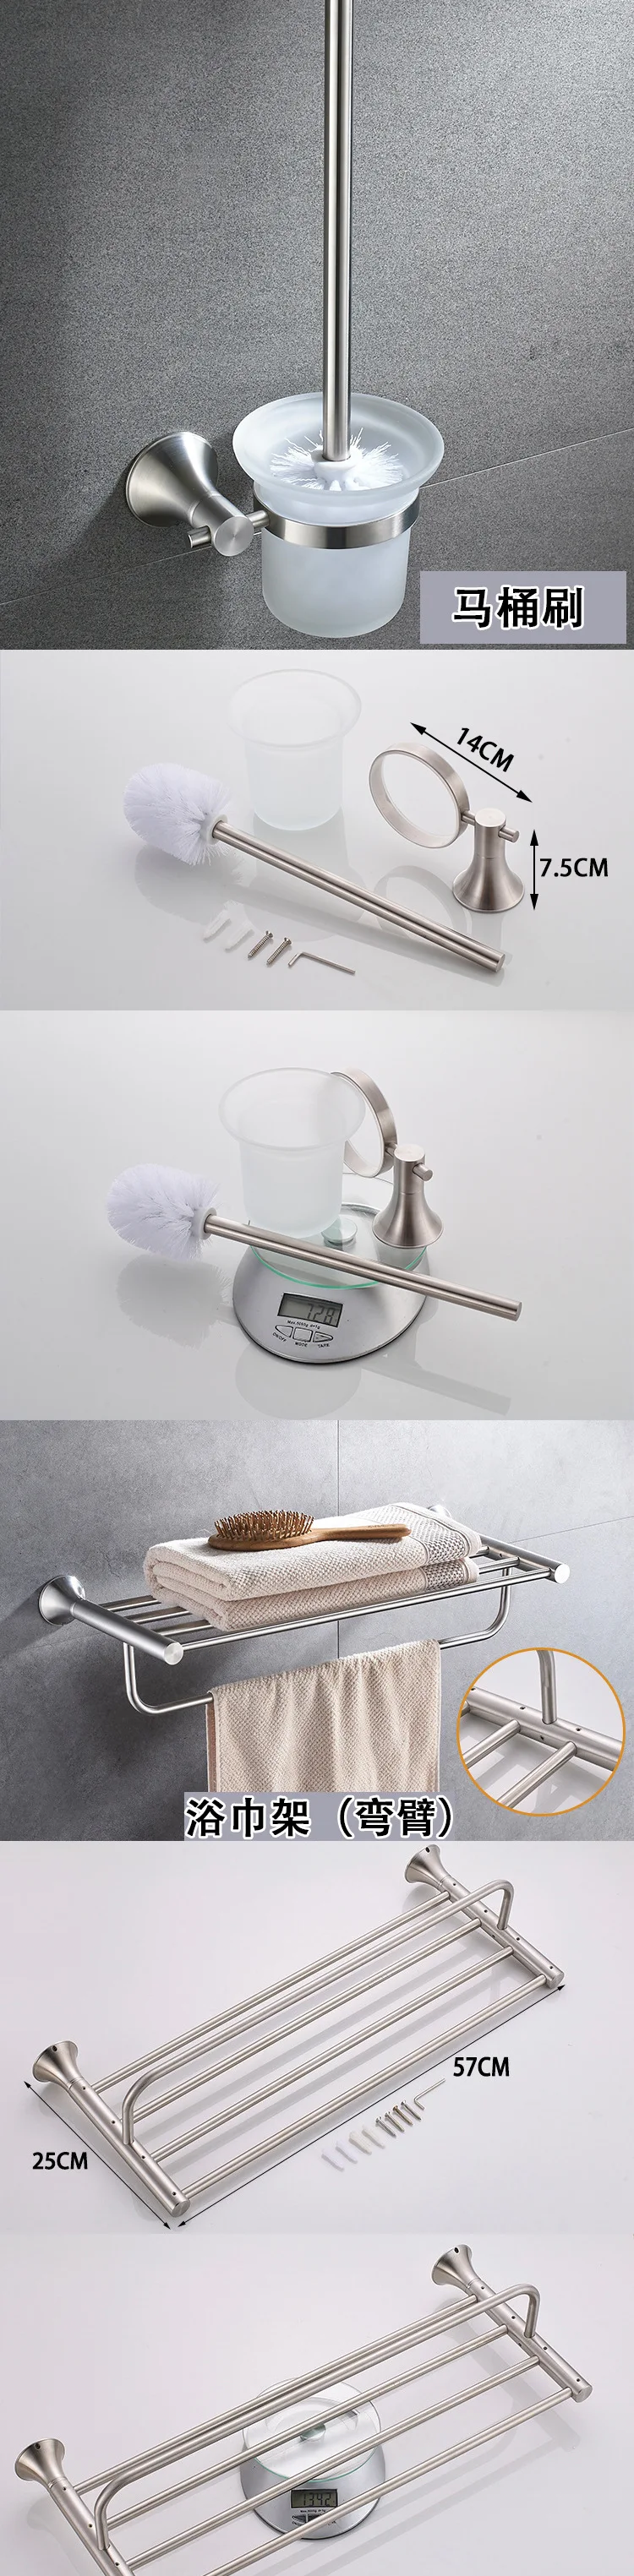 Матовый никелевый набор аксессуаров для ванной комнаты, держатель для полотенец из нержавеющей стали, держатель для туалетной бумаги, мыльница, настенный держатель для туалетной щетки